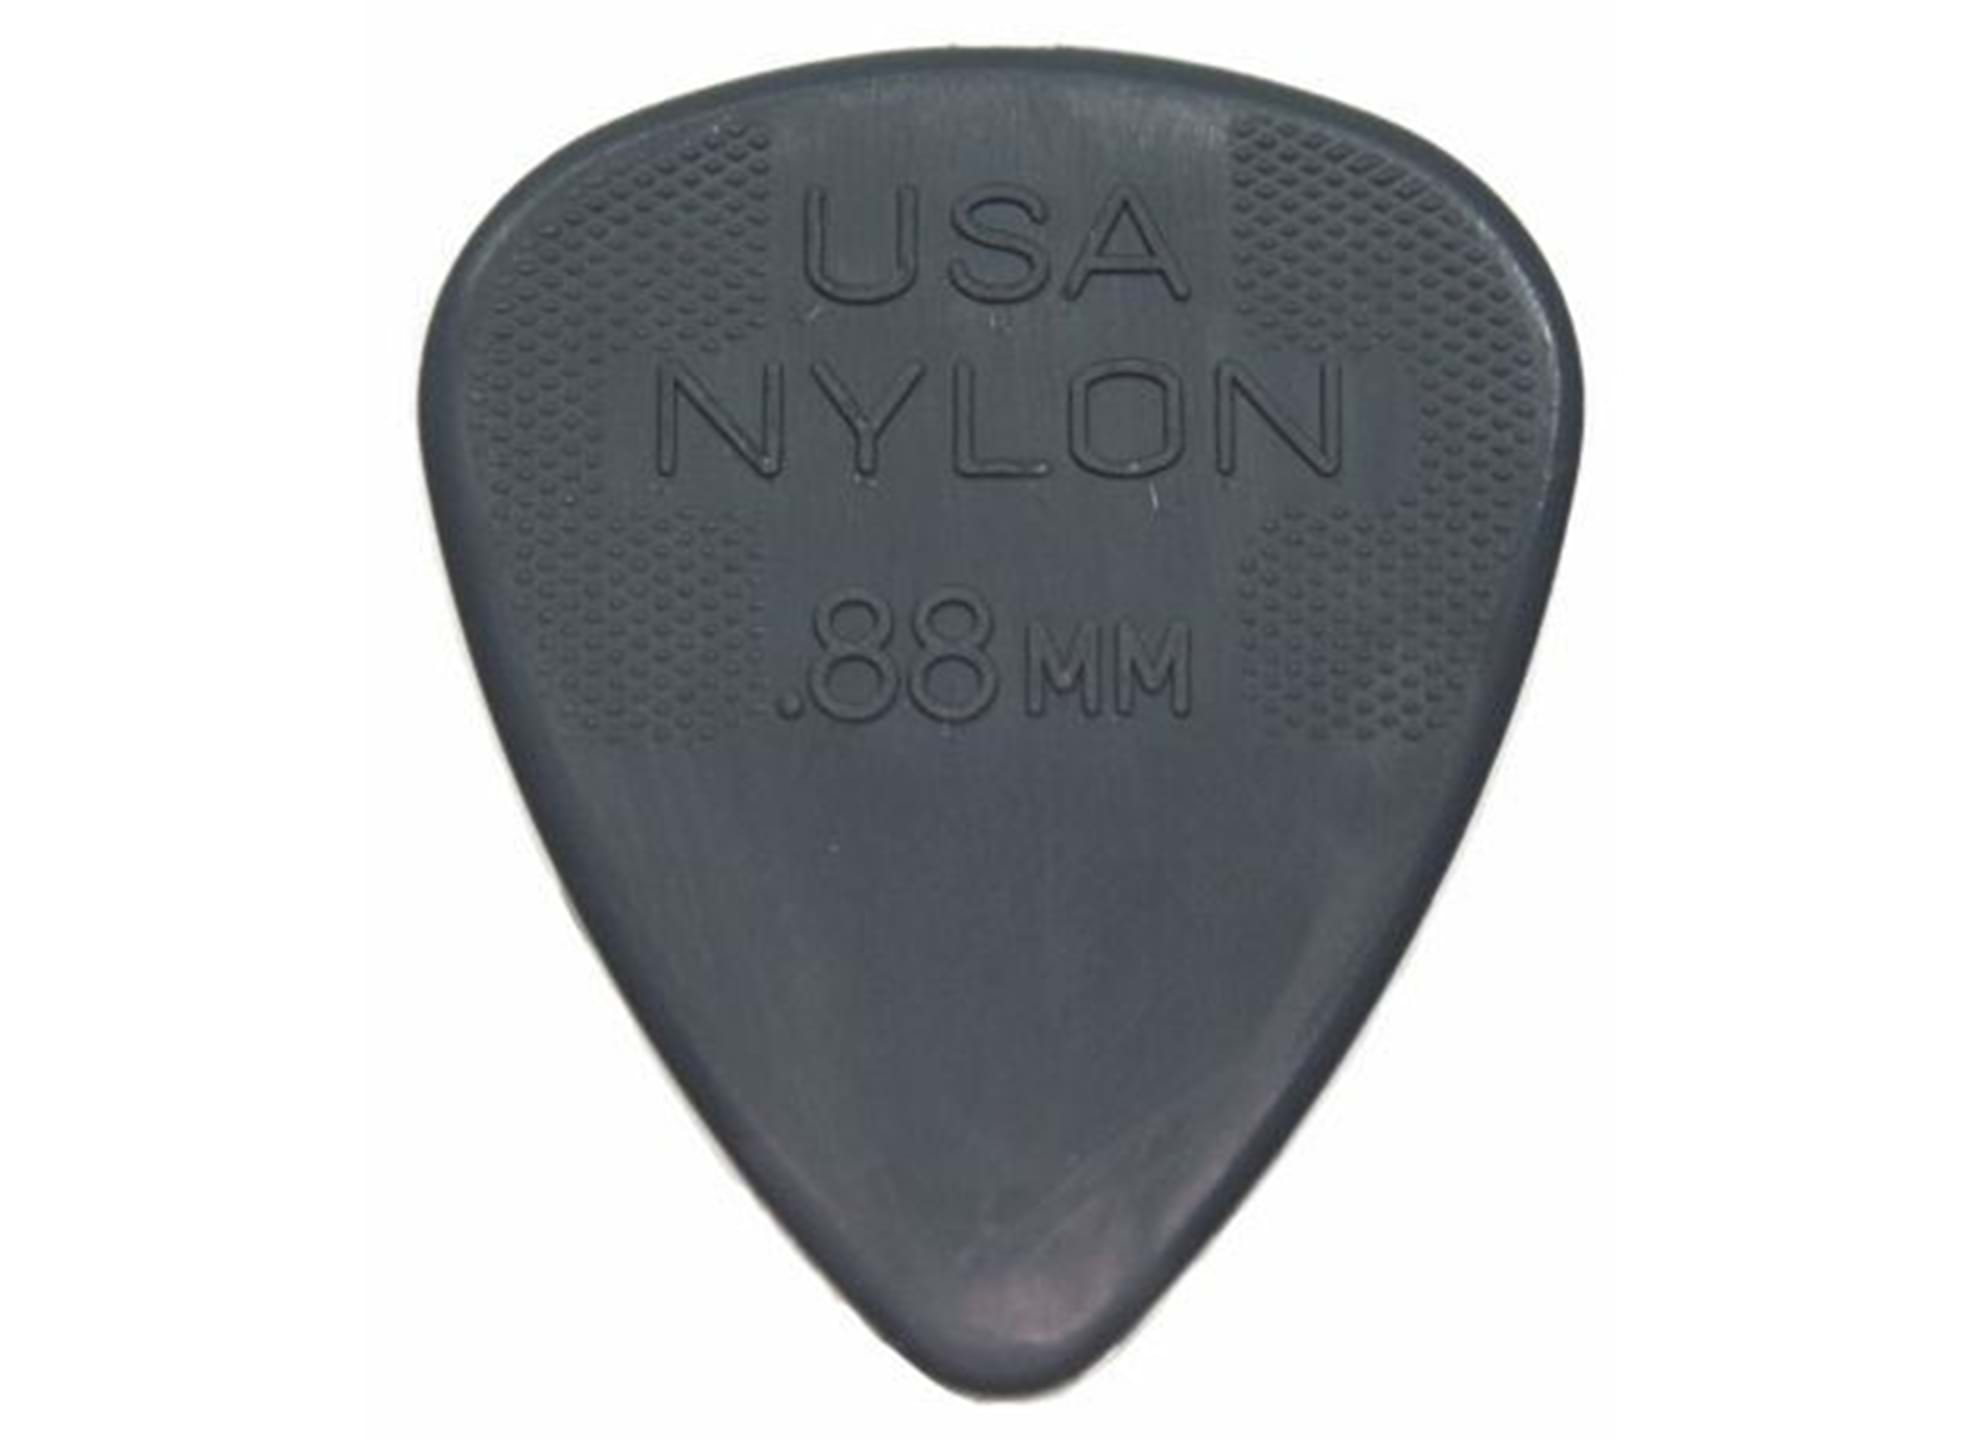 Nylon Standard 0.88mm (10-pack)